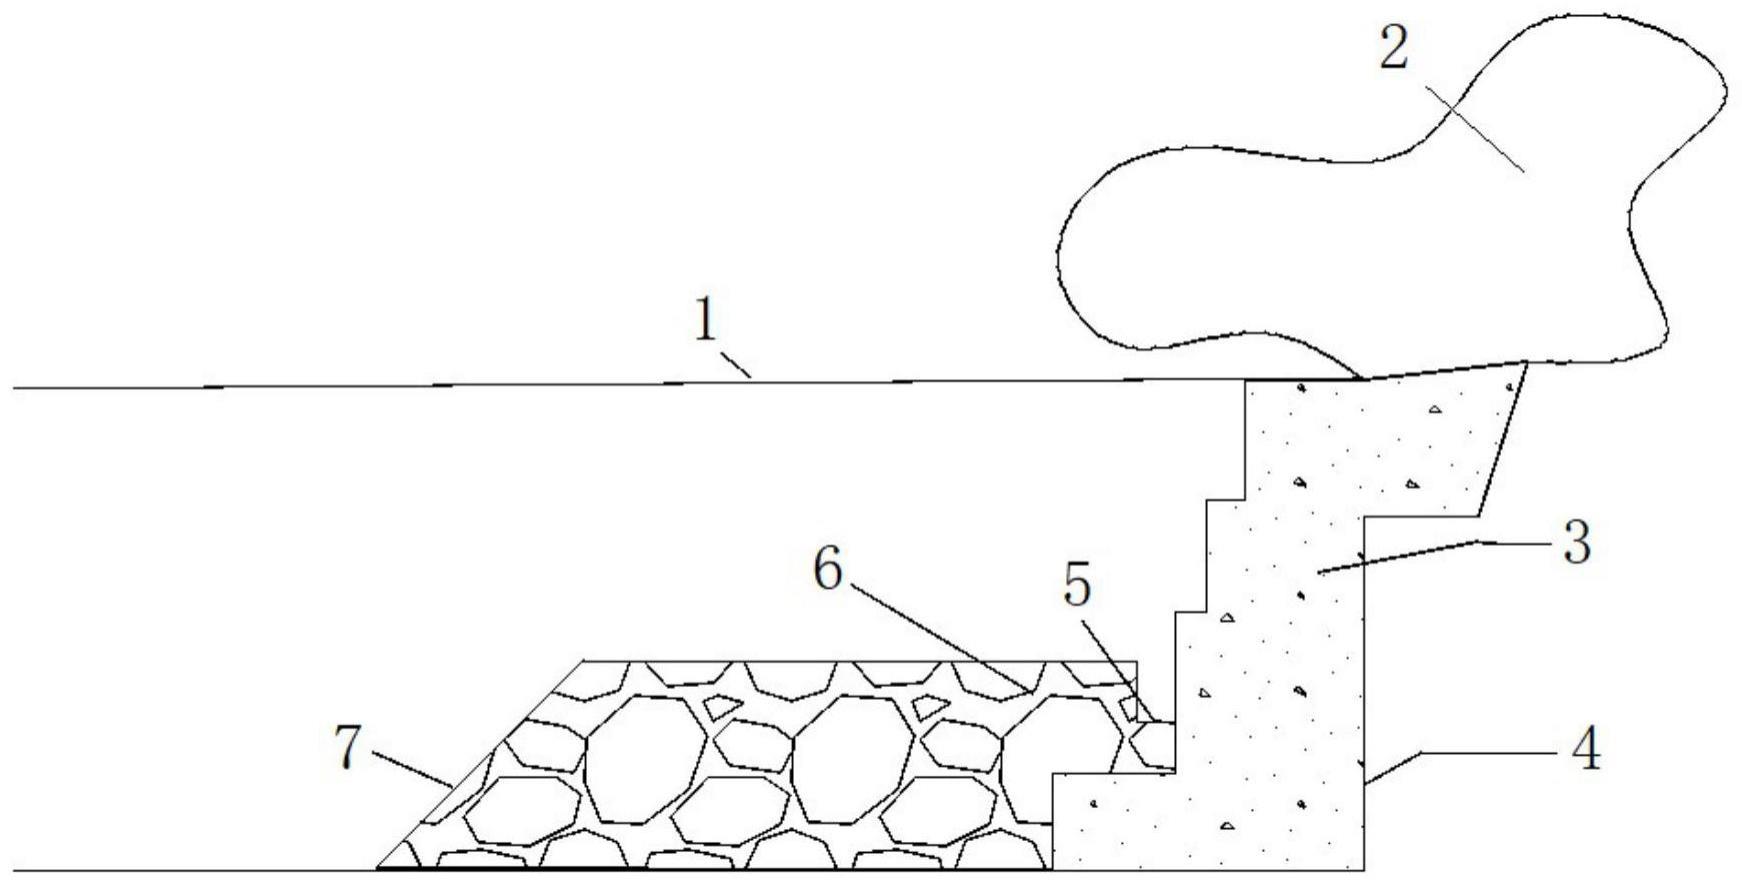 隧道富水岩溶塌腔处理方法与流程